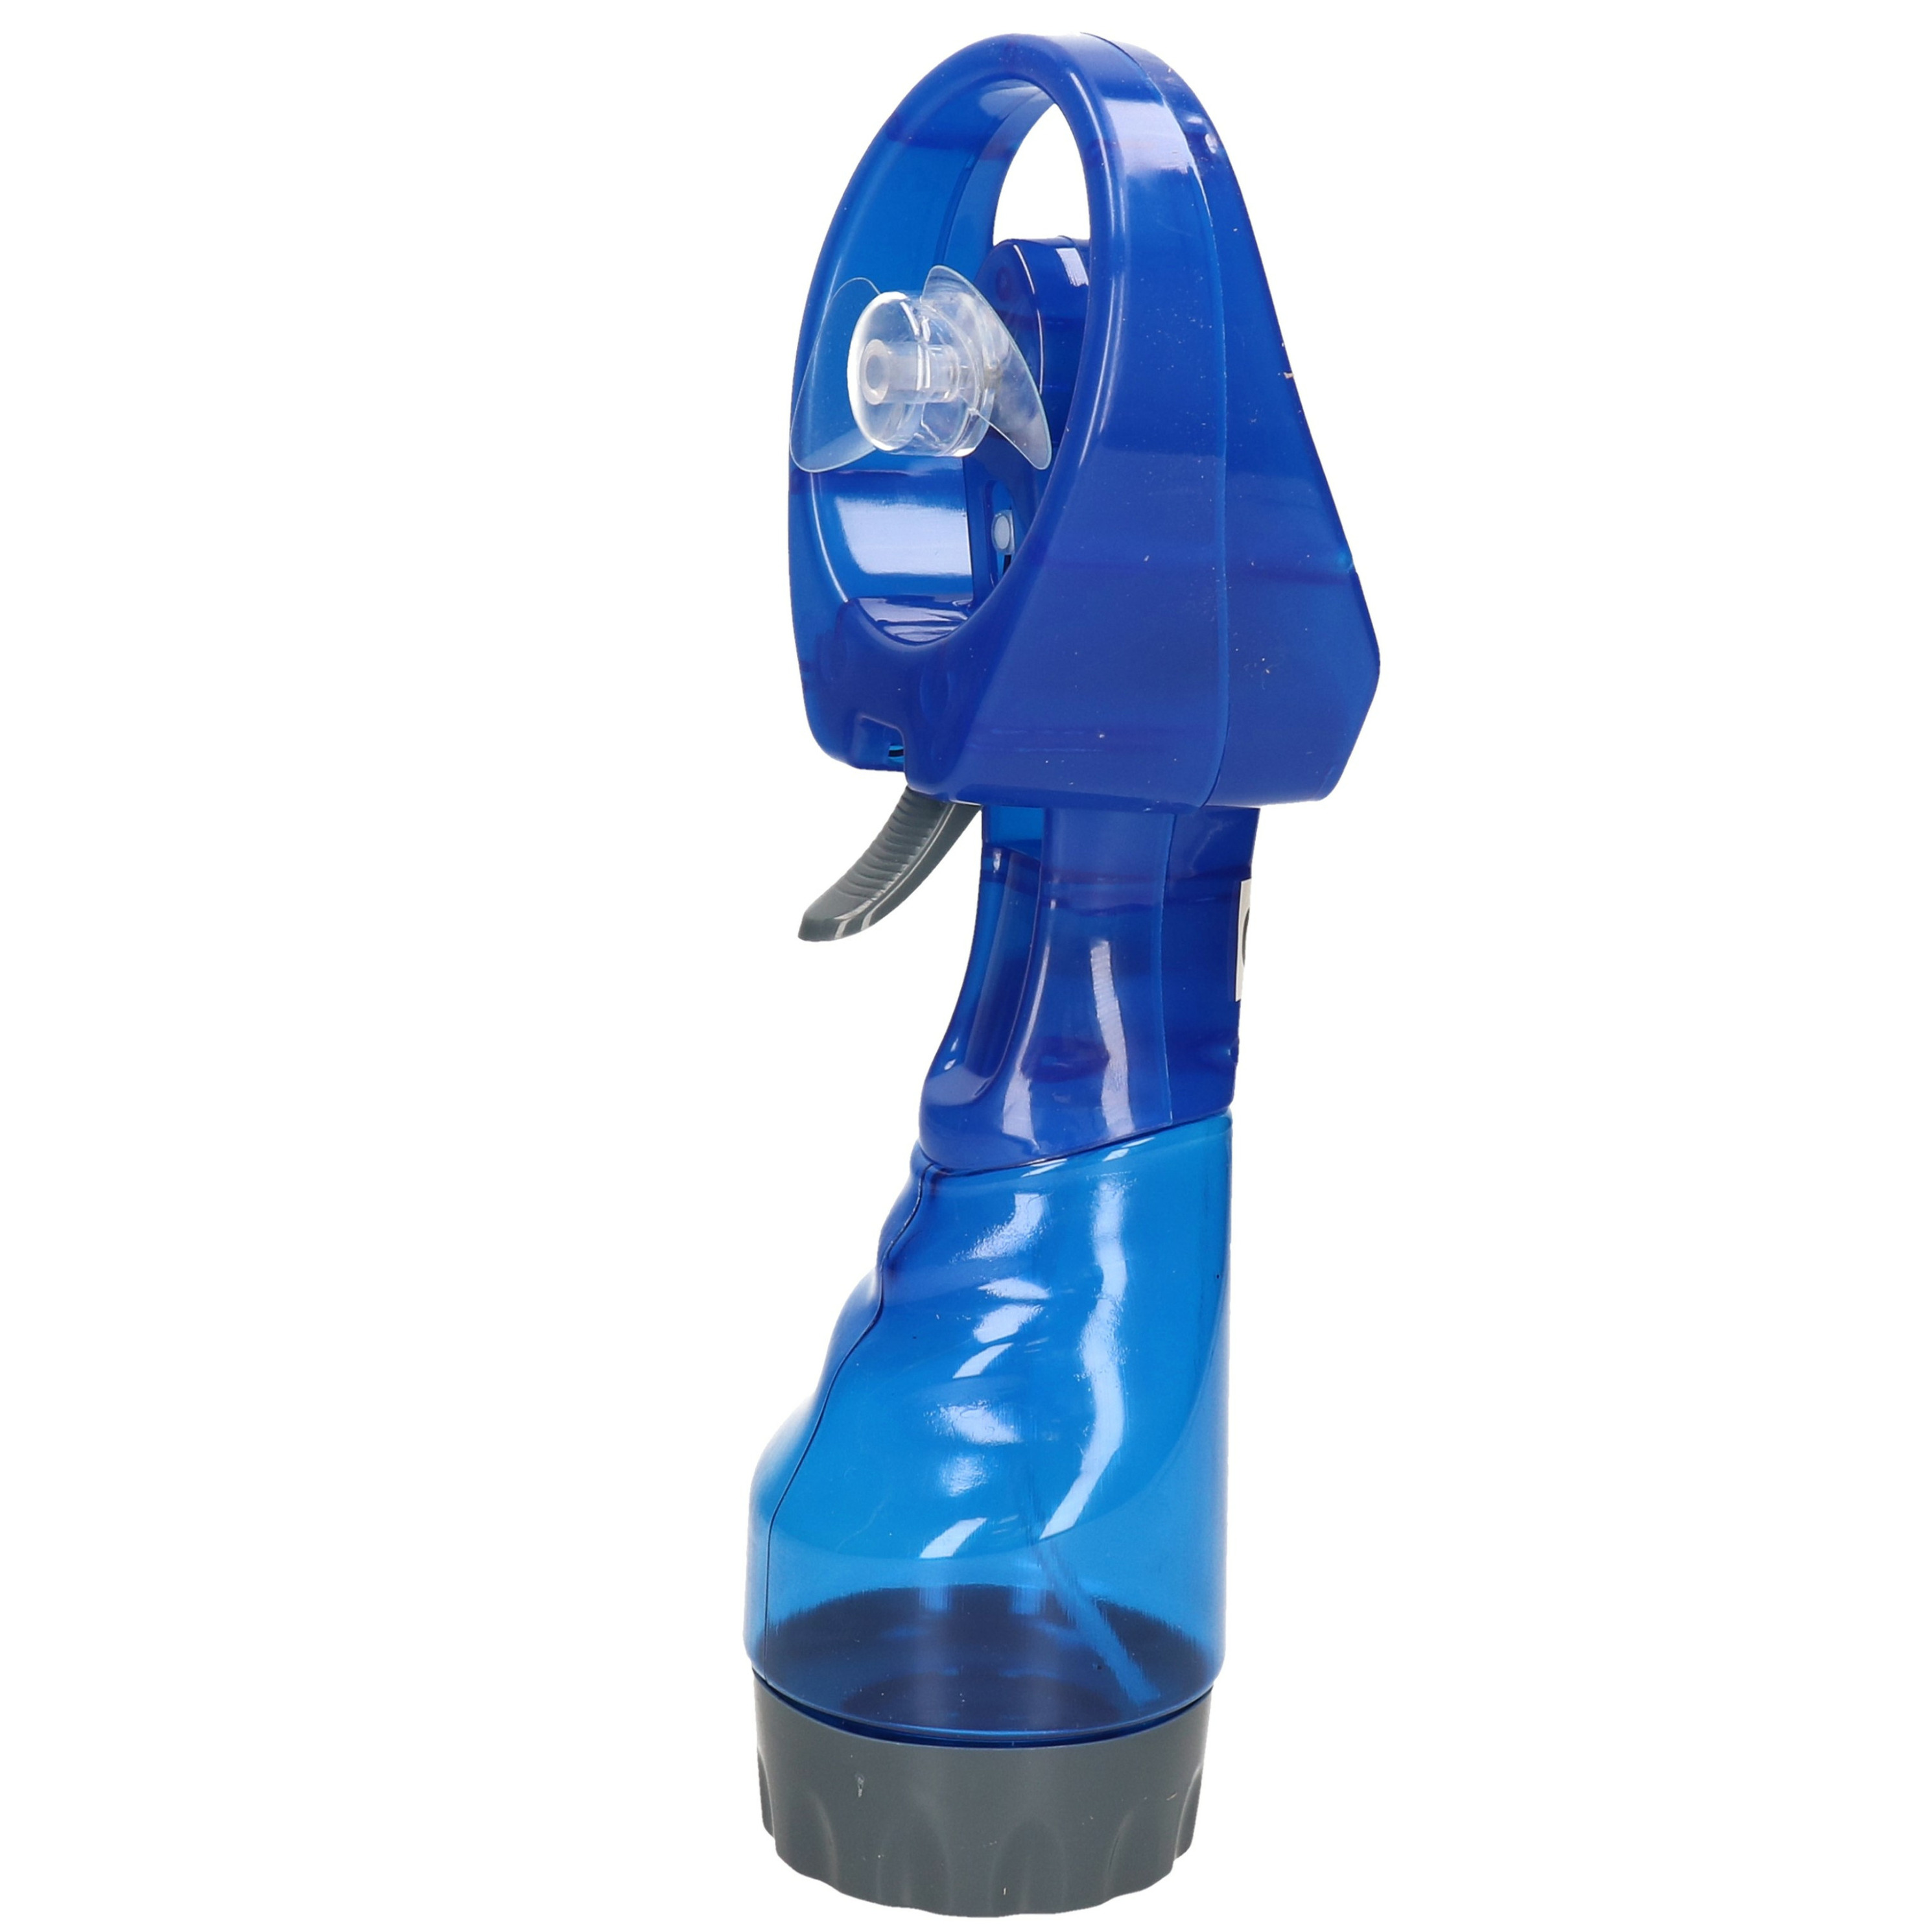 Gerimport waterspray ventilator 1x stuks -blauw 27 cm